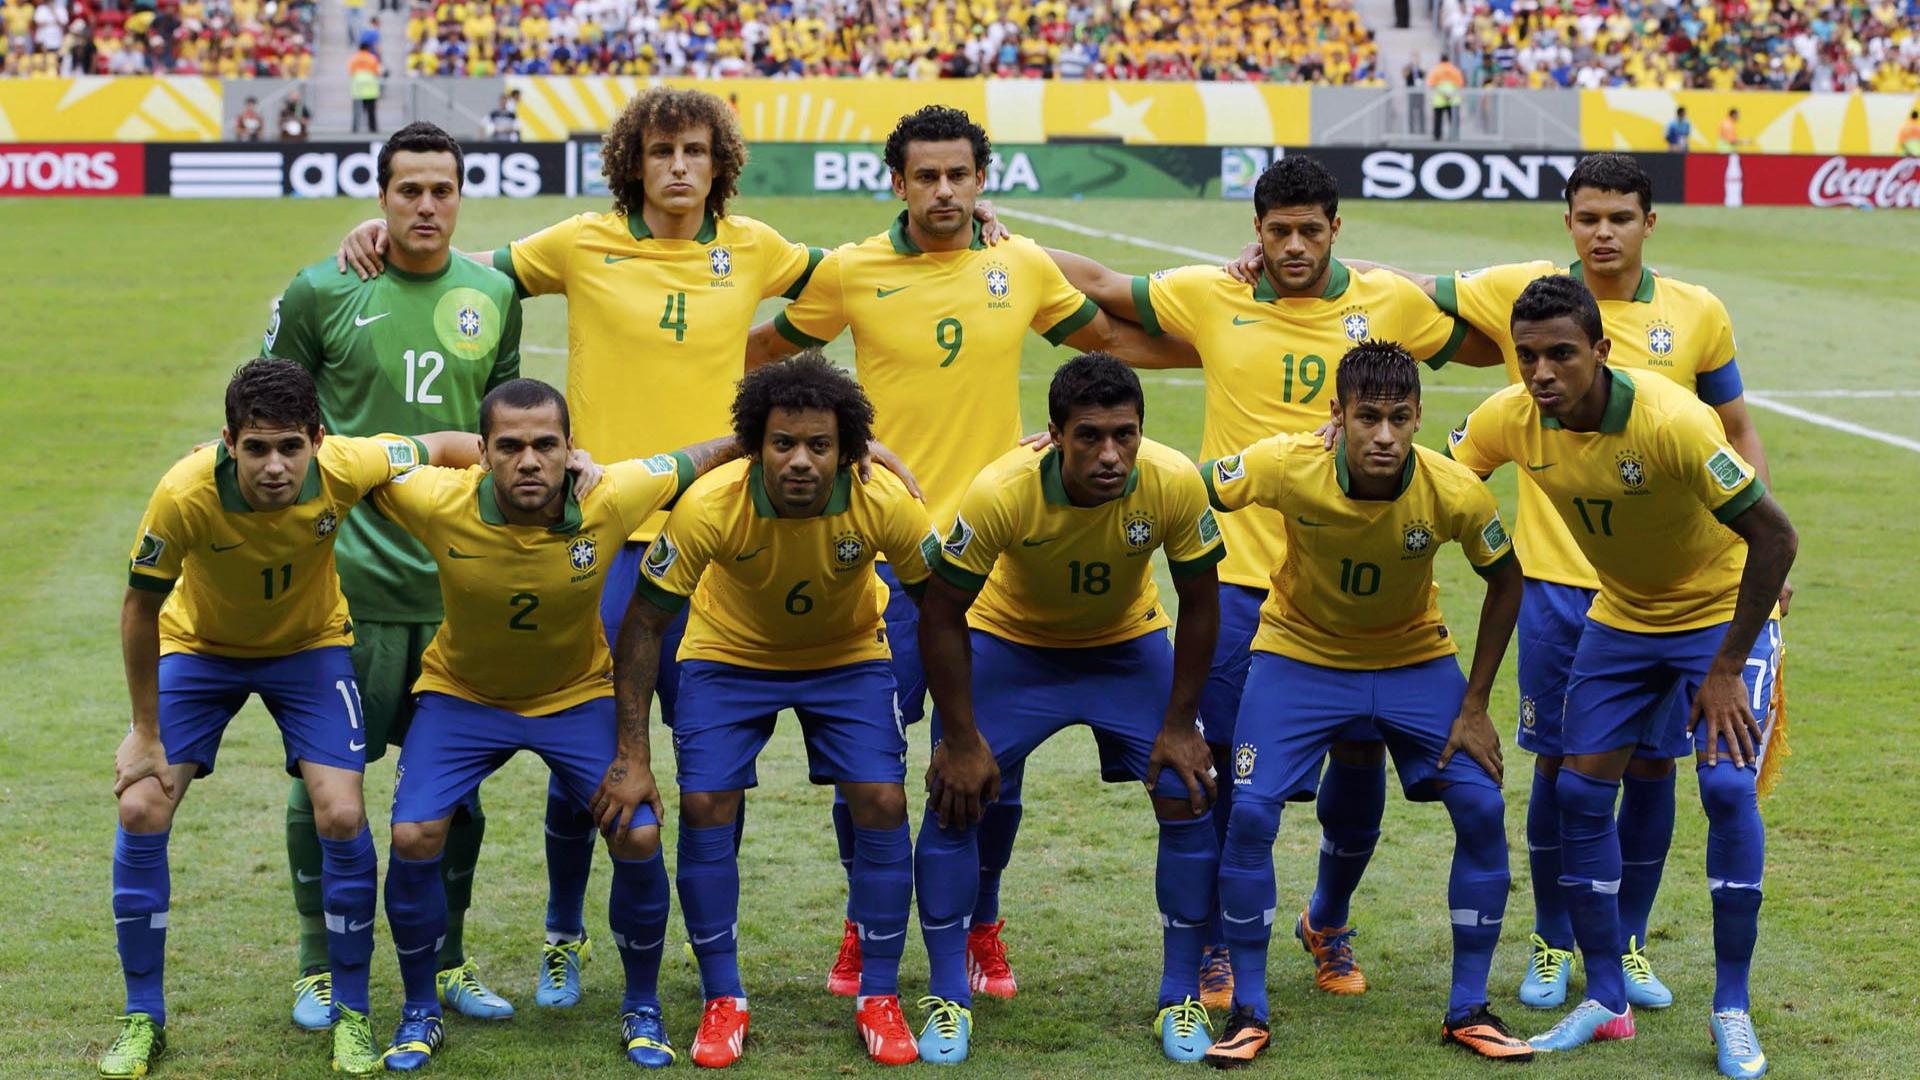 Brazil Quarter Finals – 2014 World Cup